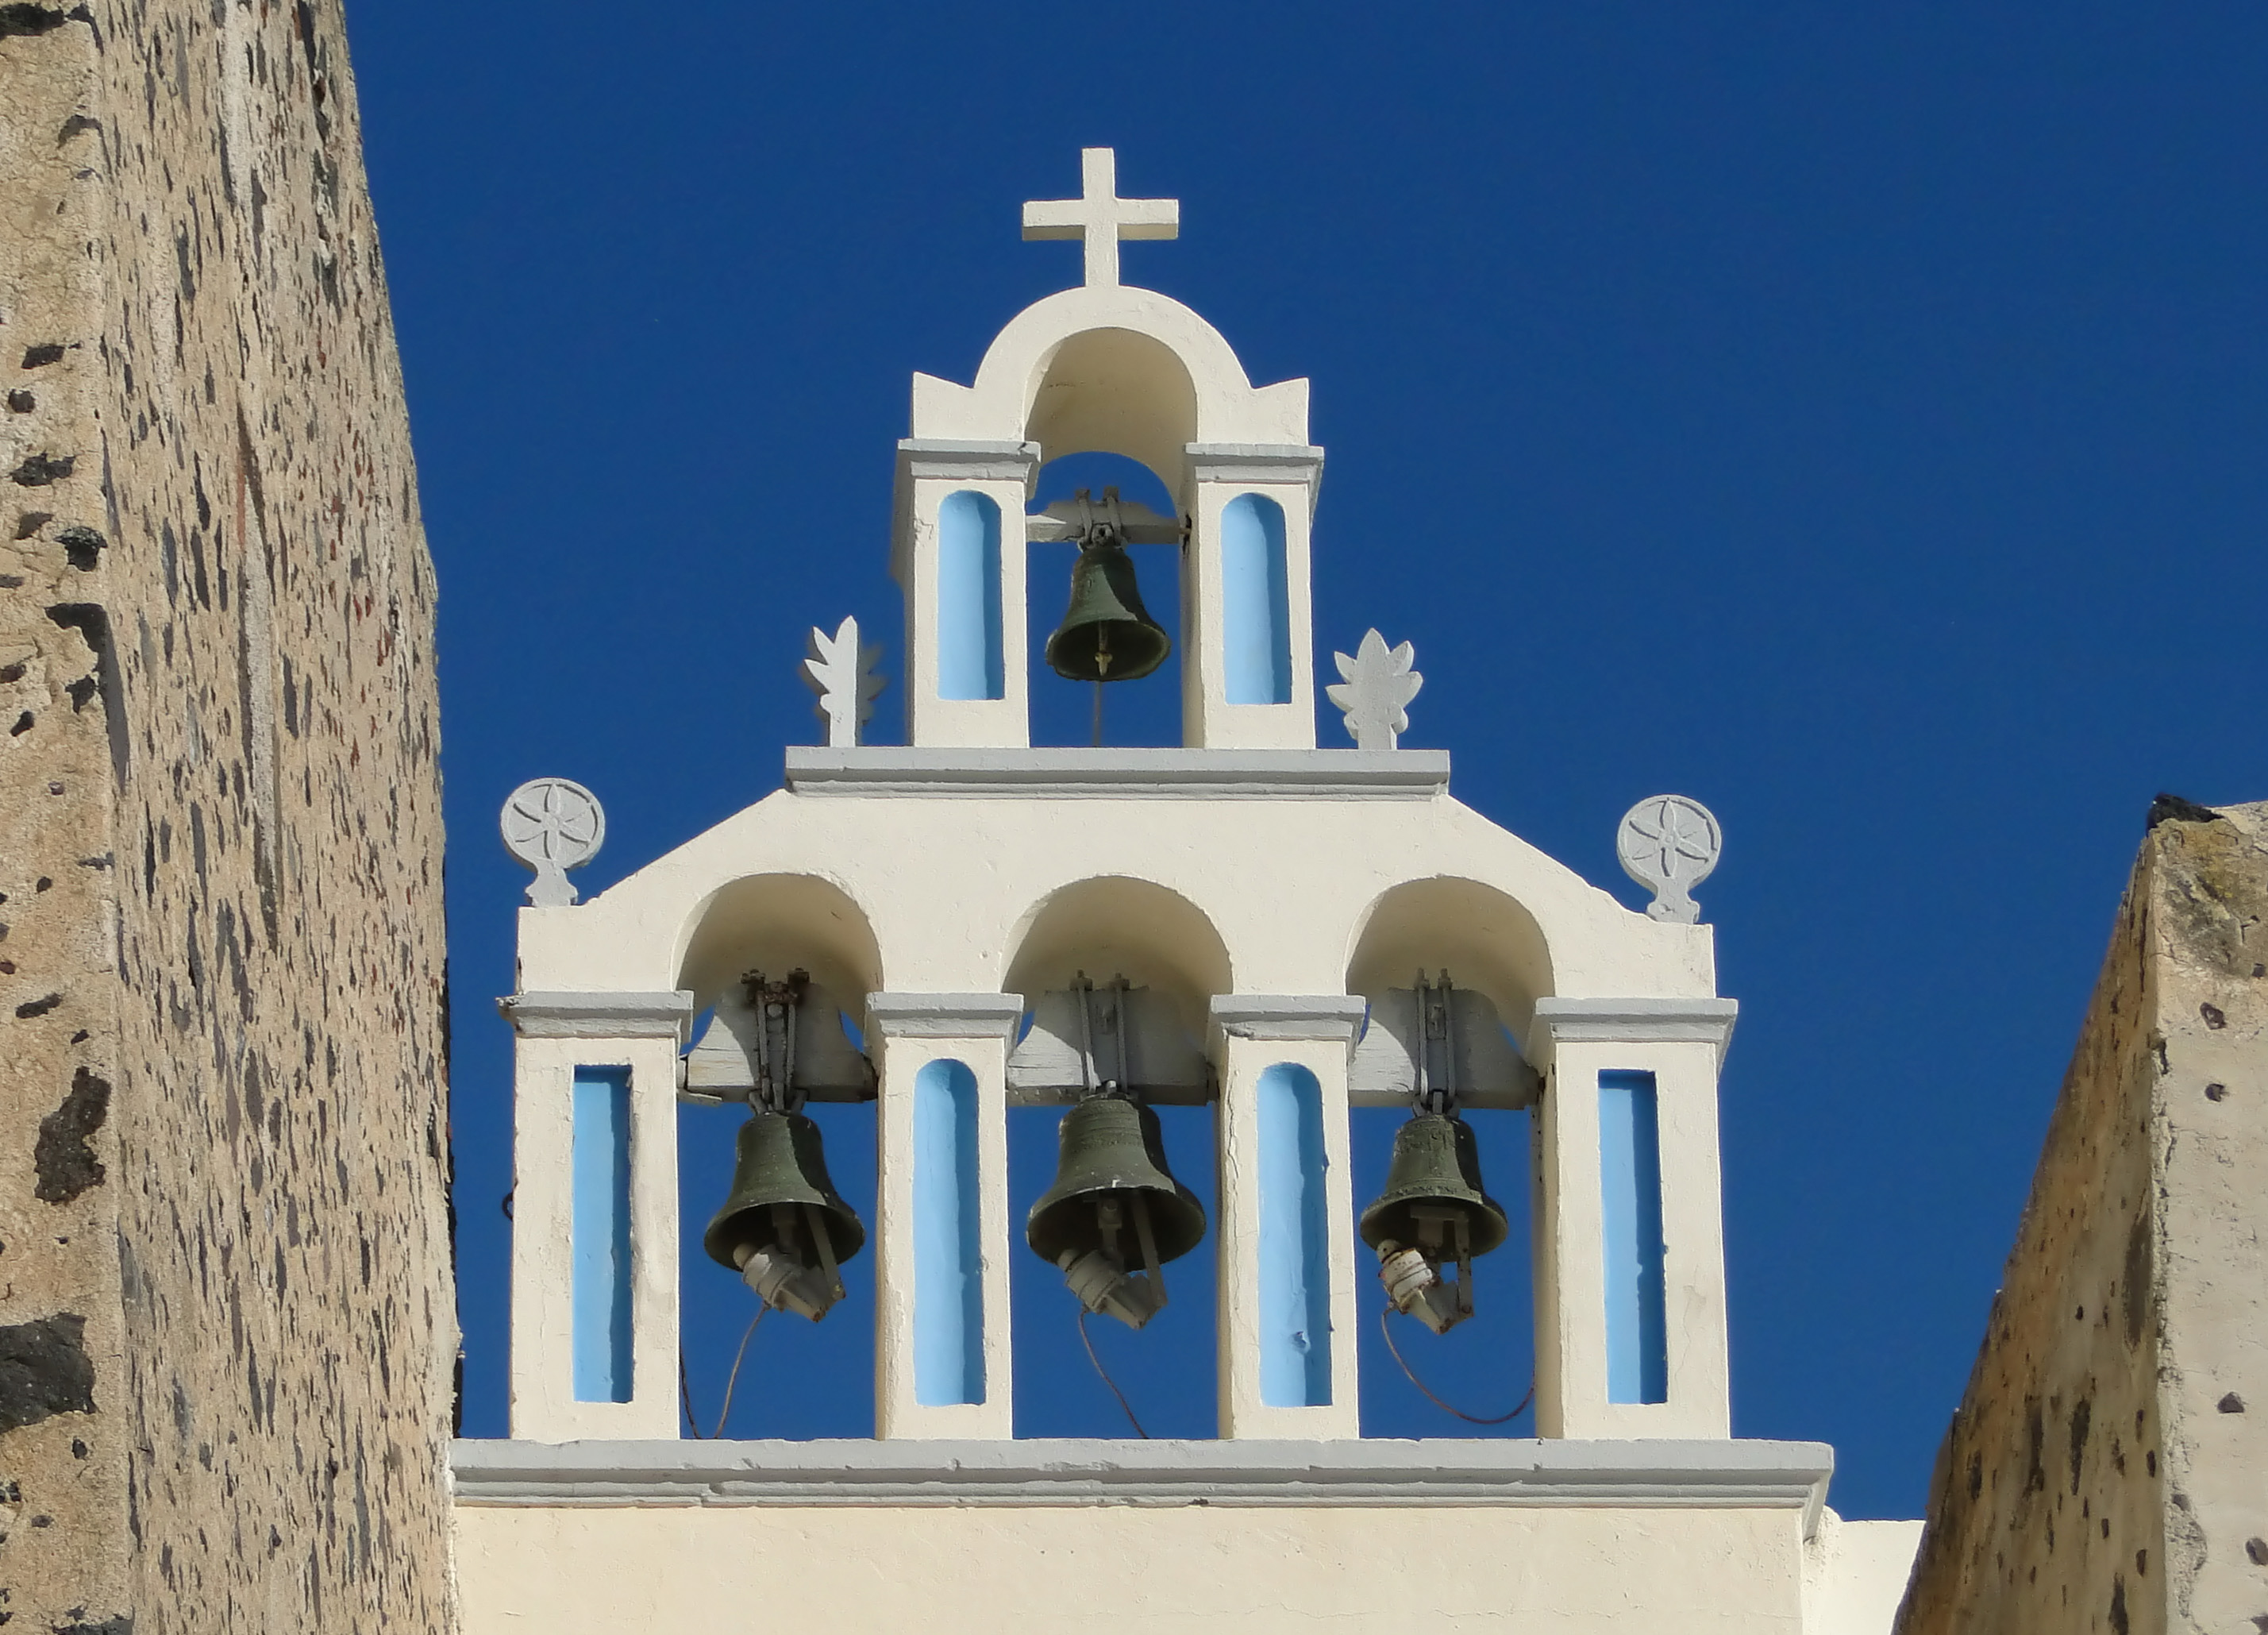 File:Church bells in Fira.jpg - Wikipedia